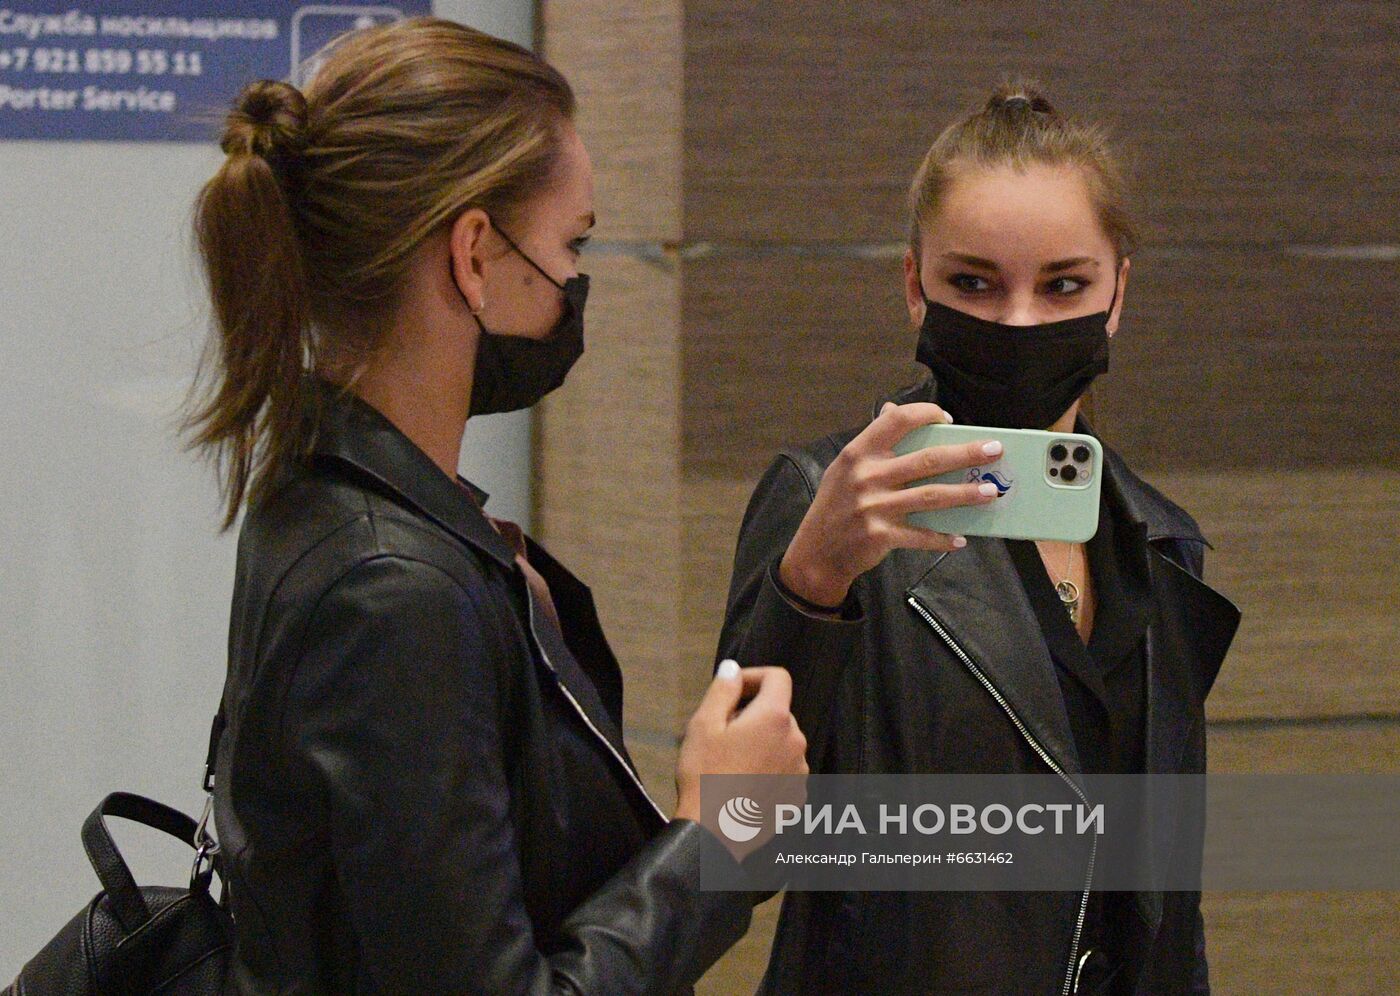 Встреча российских гимнасток Дины и Арины Авериных в аэропорту Пулково